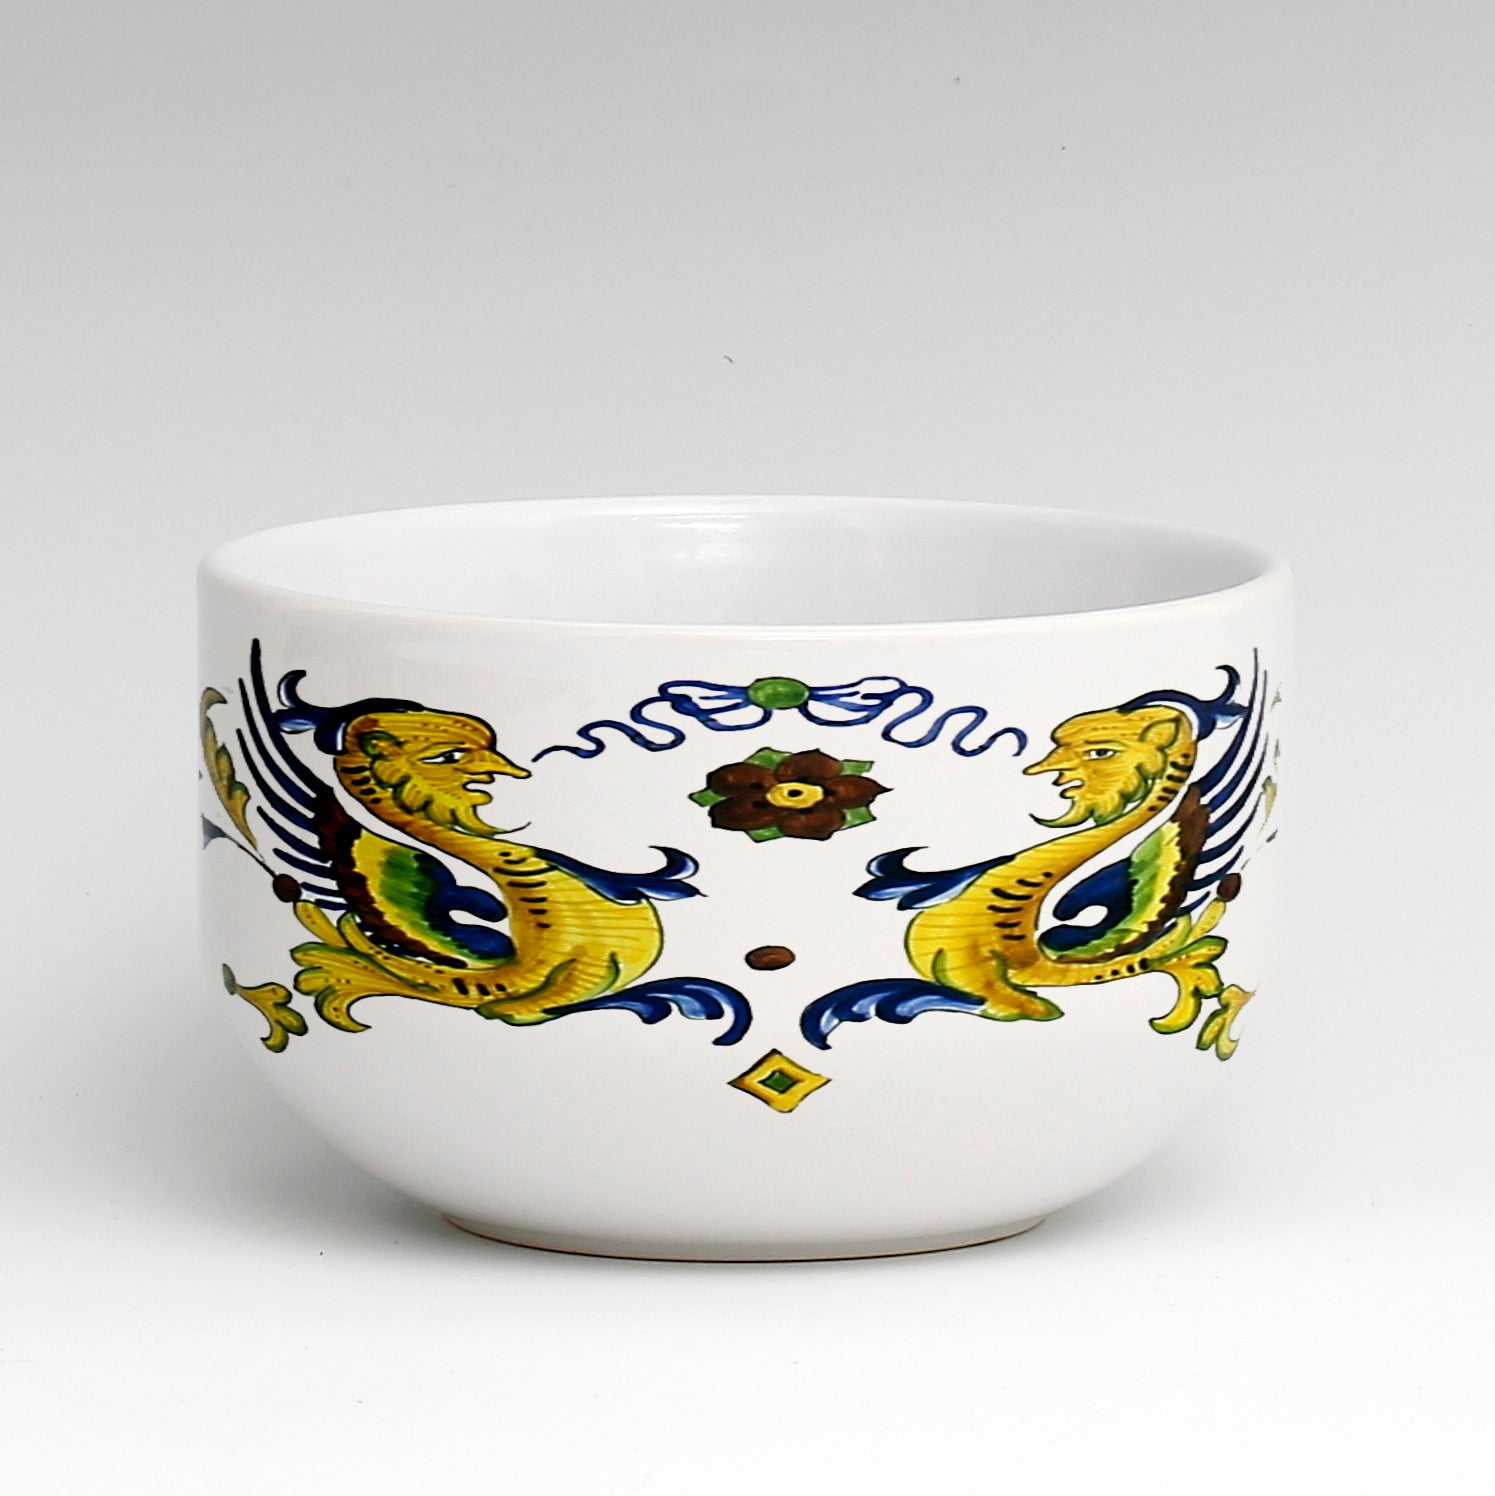 SUBLIMART: Porcelain Cereal/Soup Bowl Deruta Style (Design #DER02)